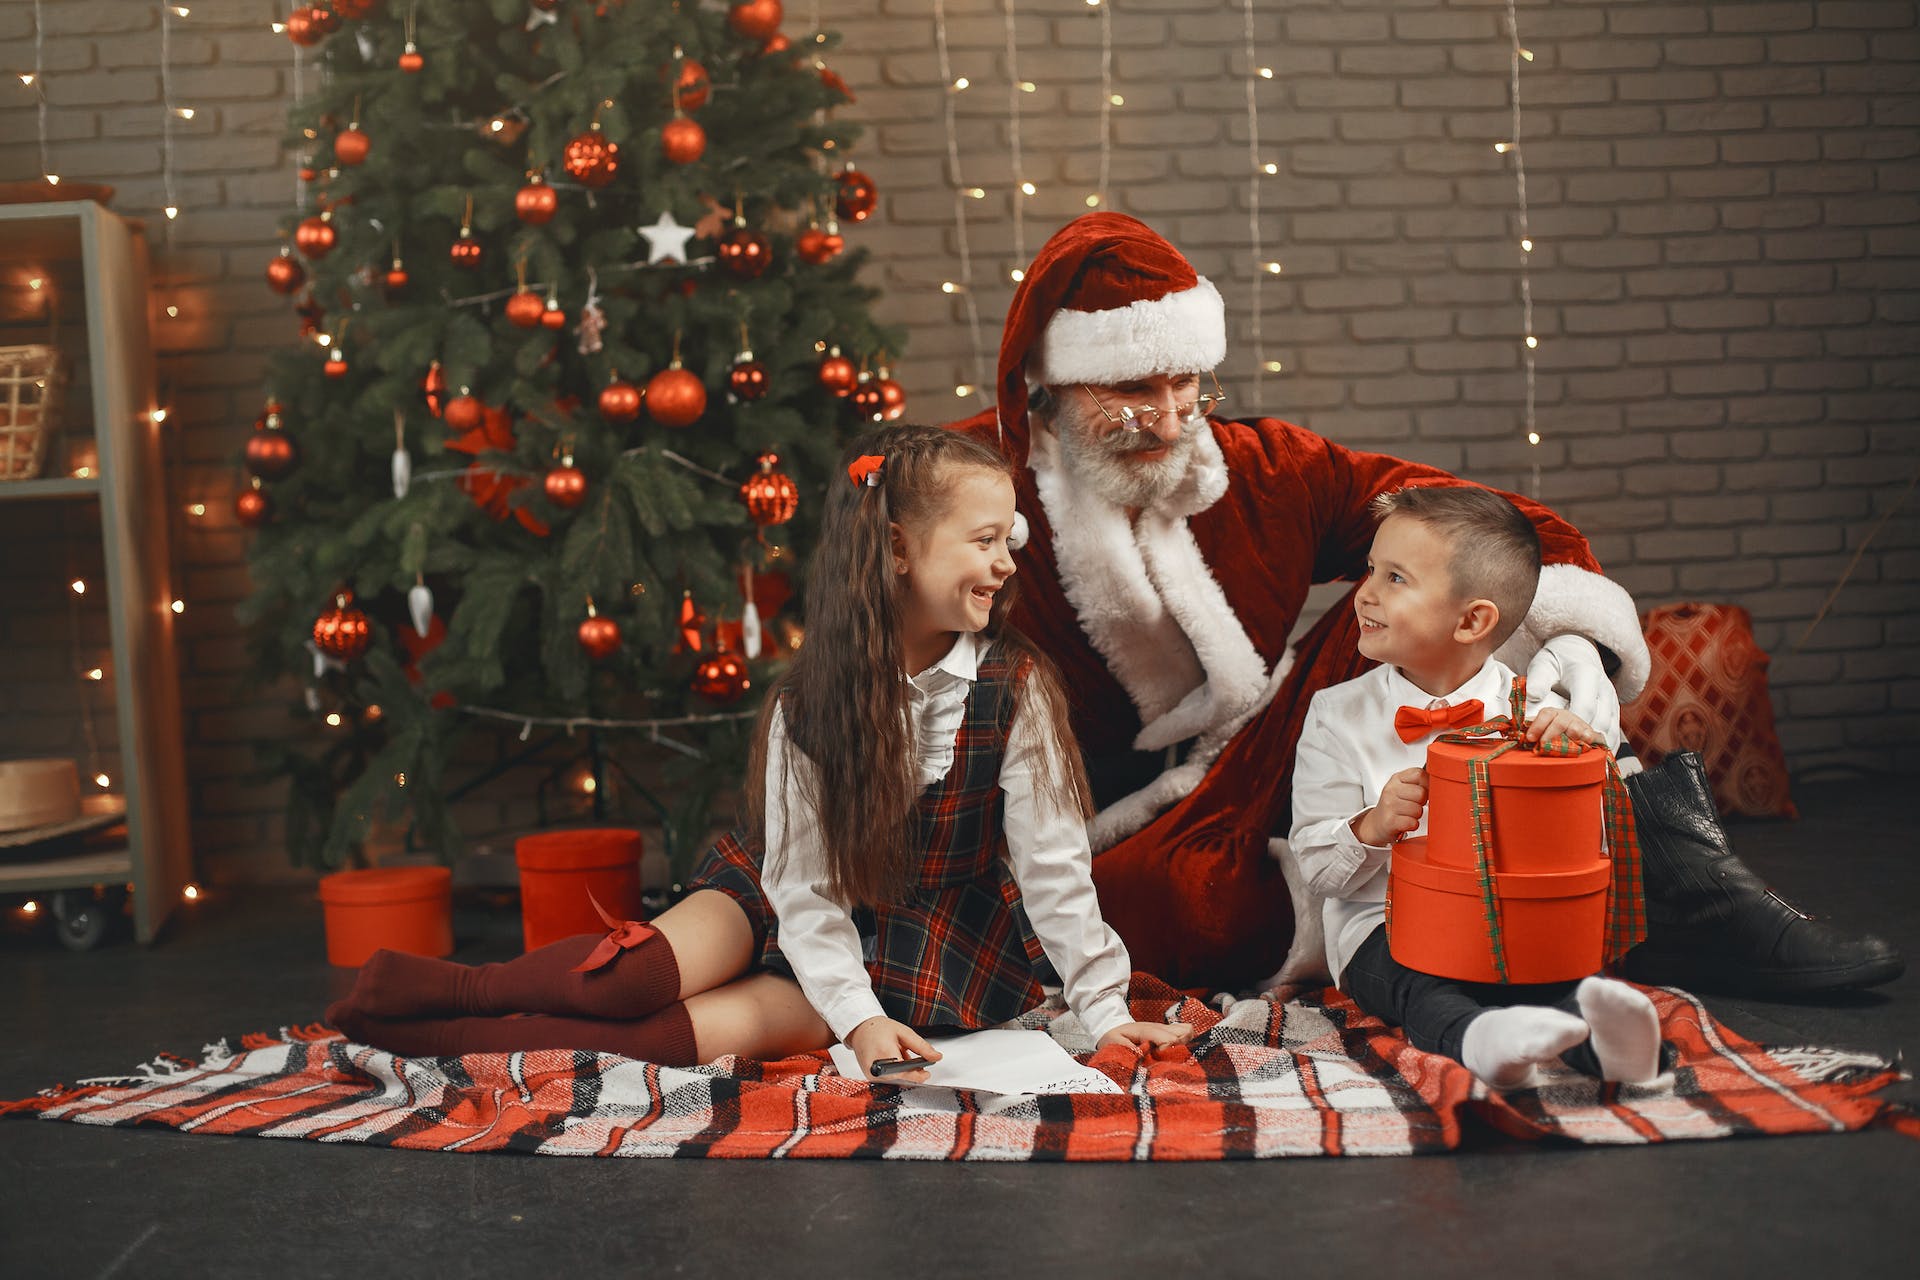 Mann im Weihnachtsmannkostüm sitzt mit einem Jungen und einem Mädchen neben einem Weihnachtsbaum | Quelle: Pexels